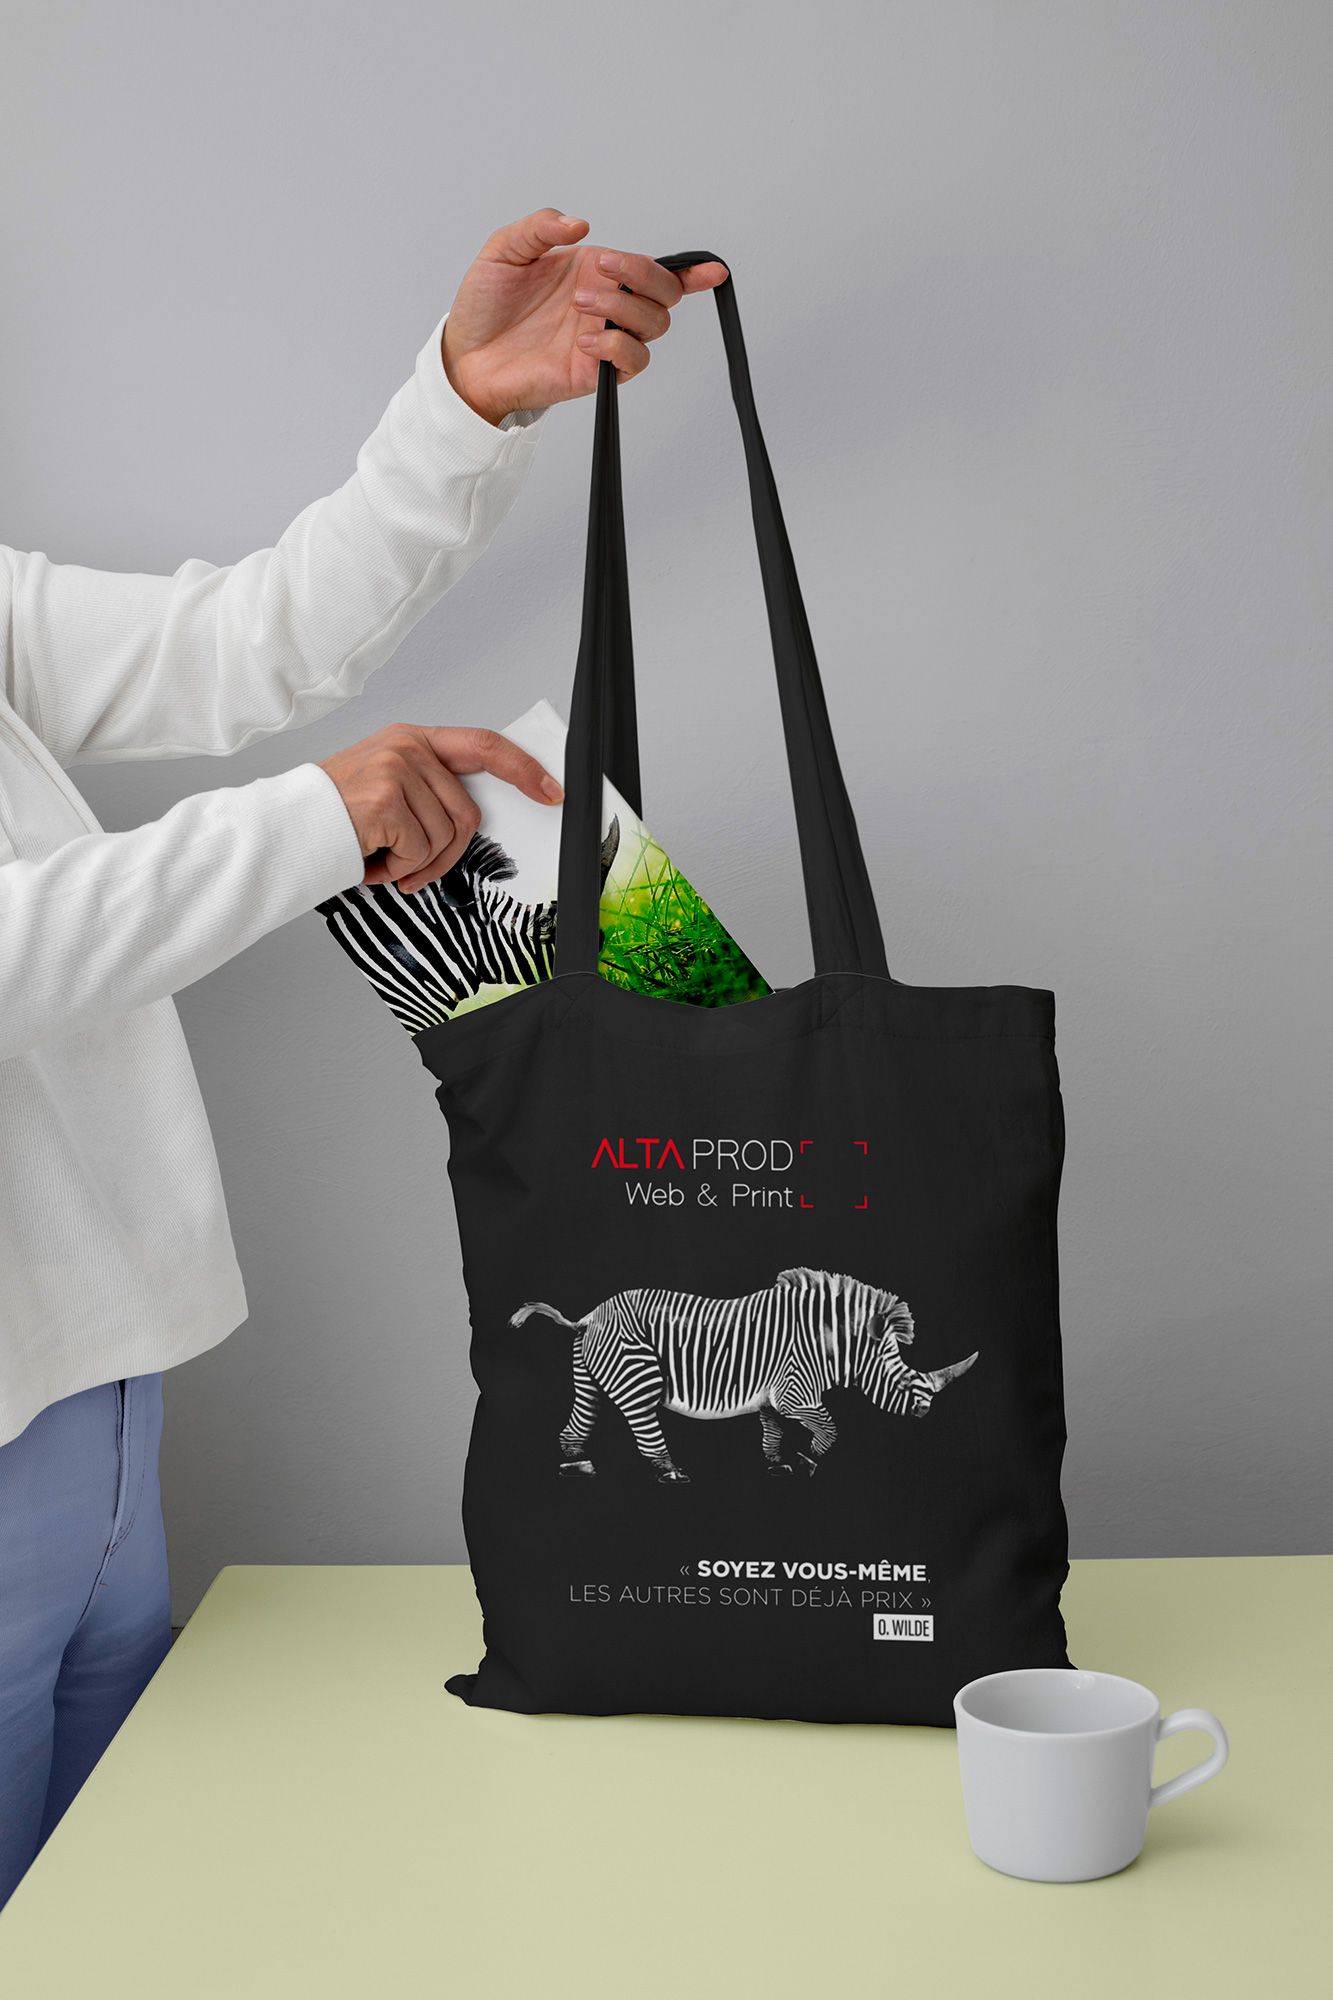 ALTAprod, Agence Web et de Communication (Aurillac-Cantal) réalise vos tote-bag et autres textiles personnalisés